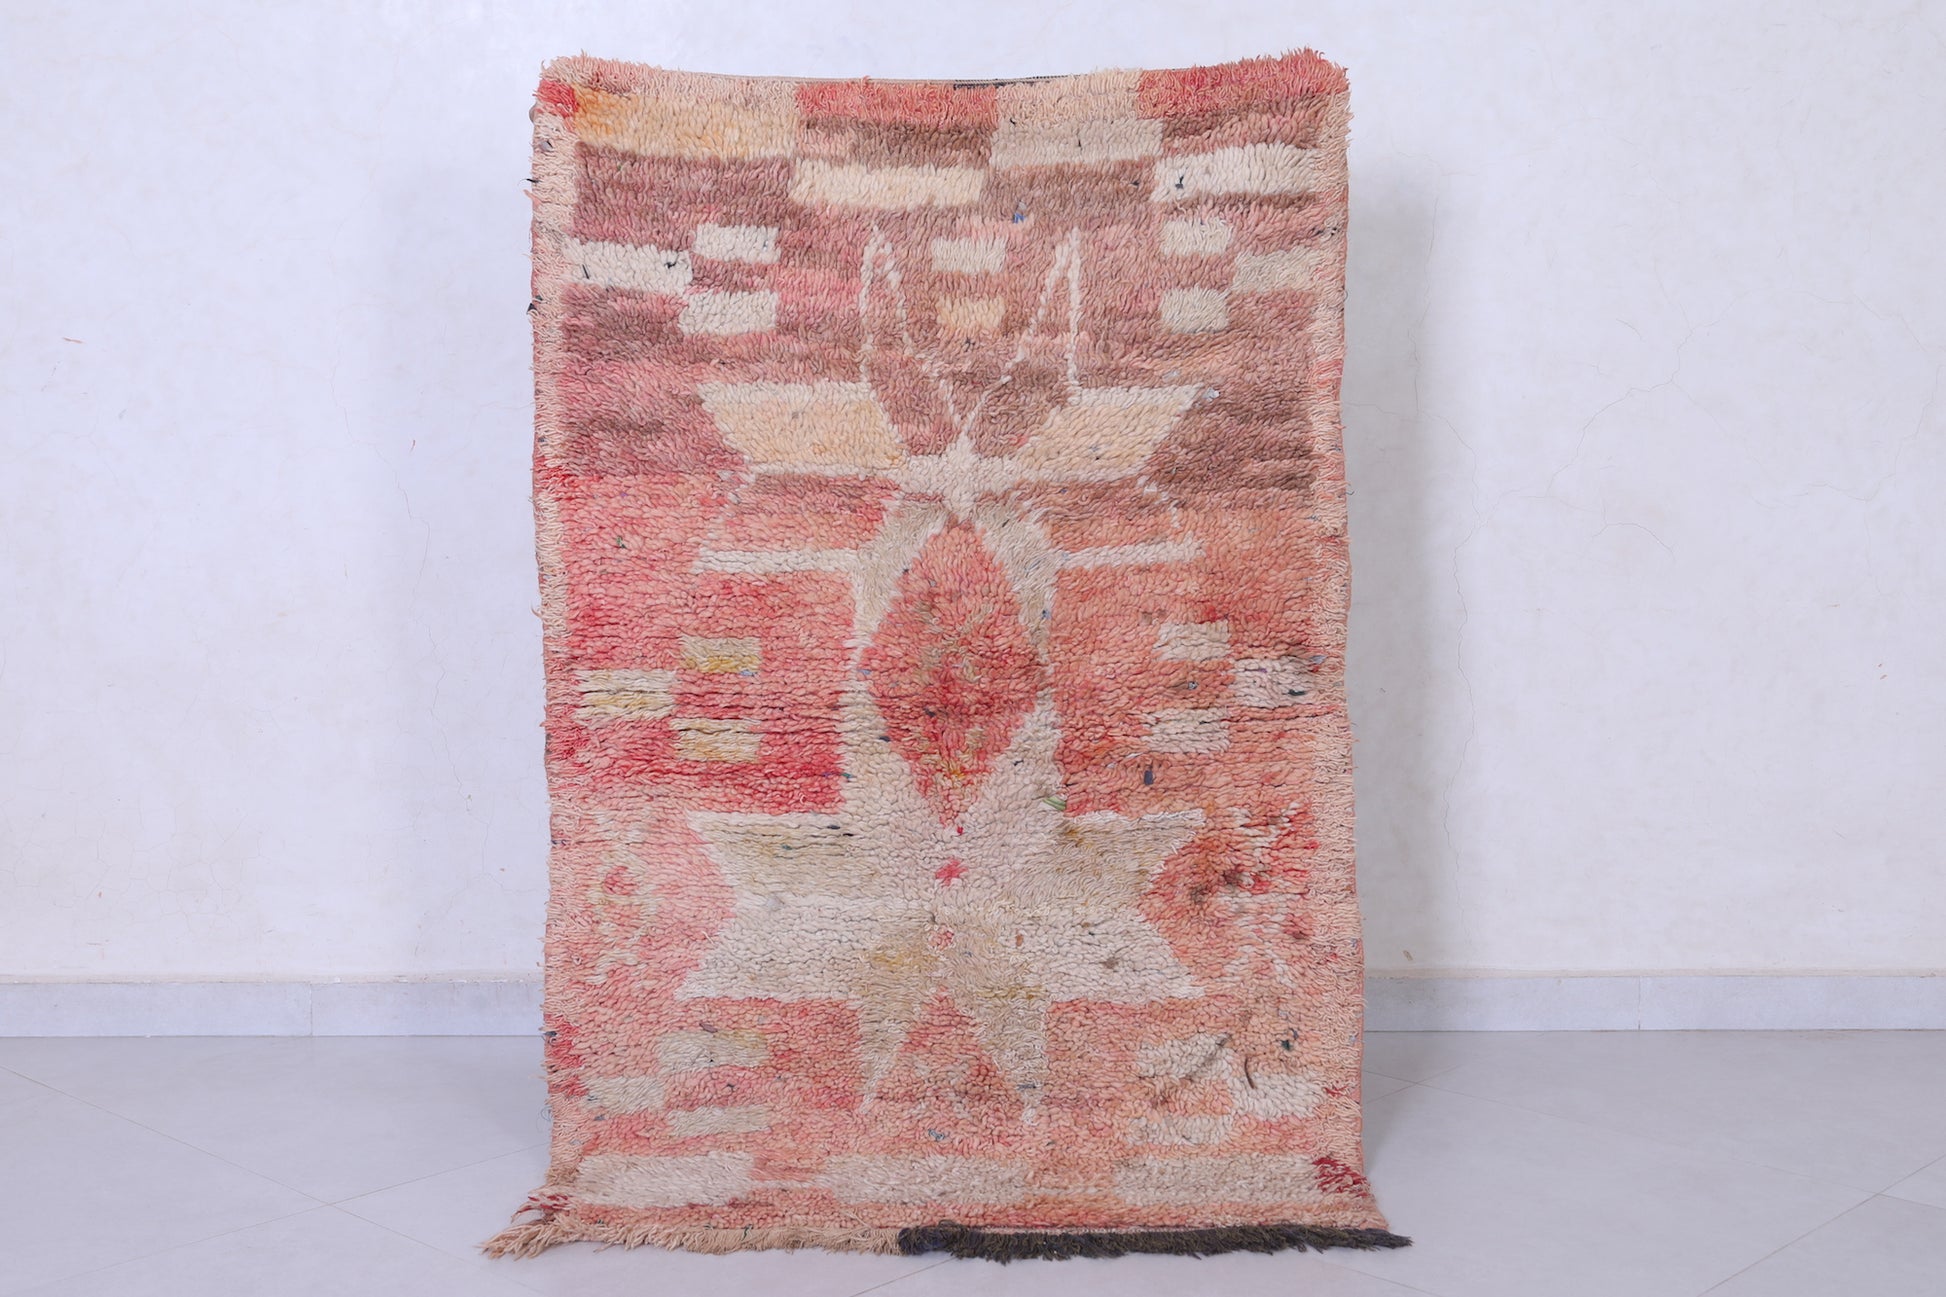 Vintage handmade moroccan berber runner rug 2.9 FT X 4.6 FT